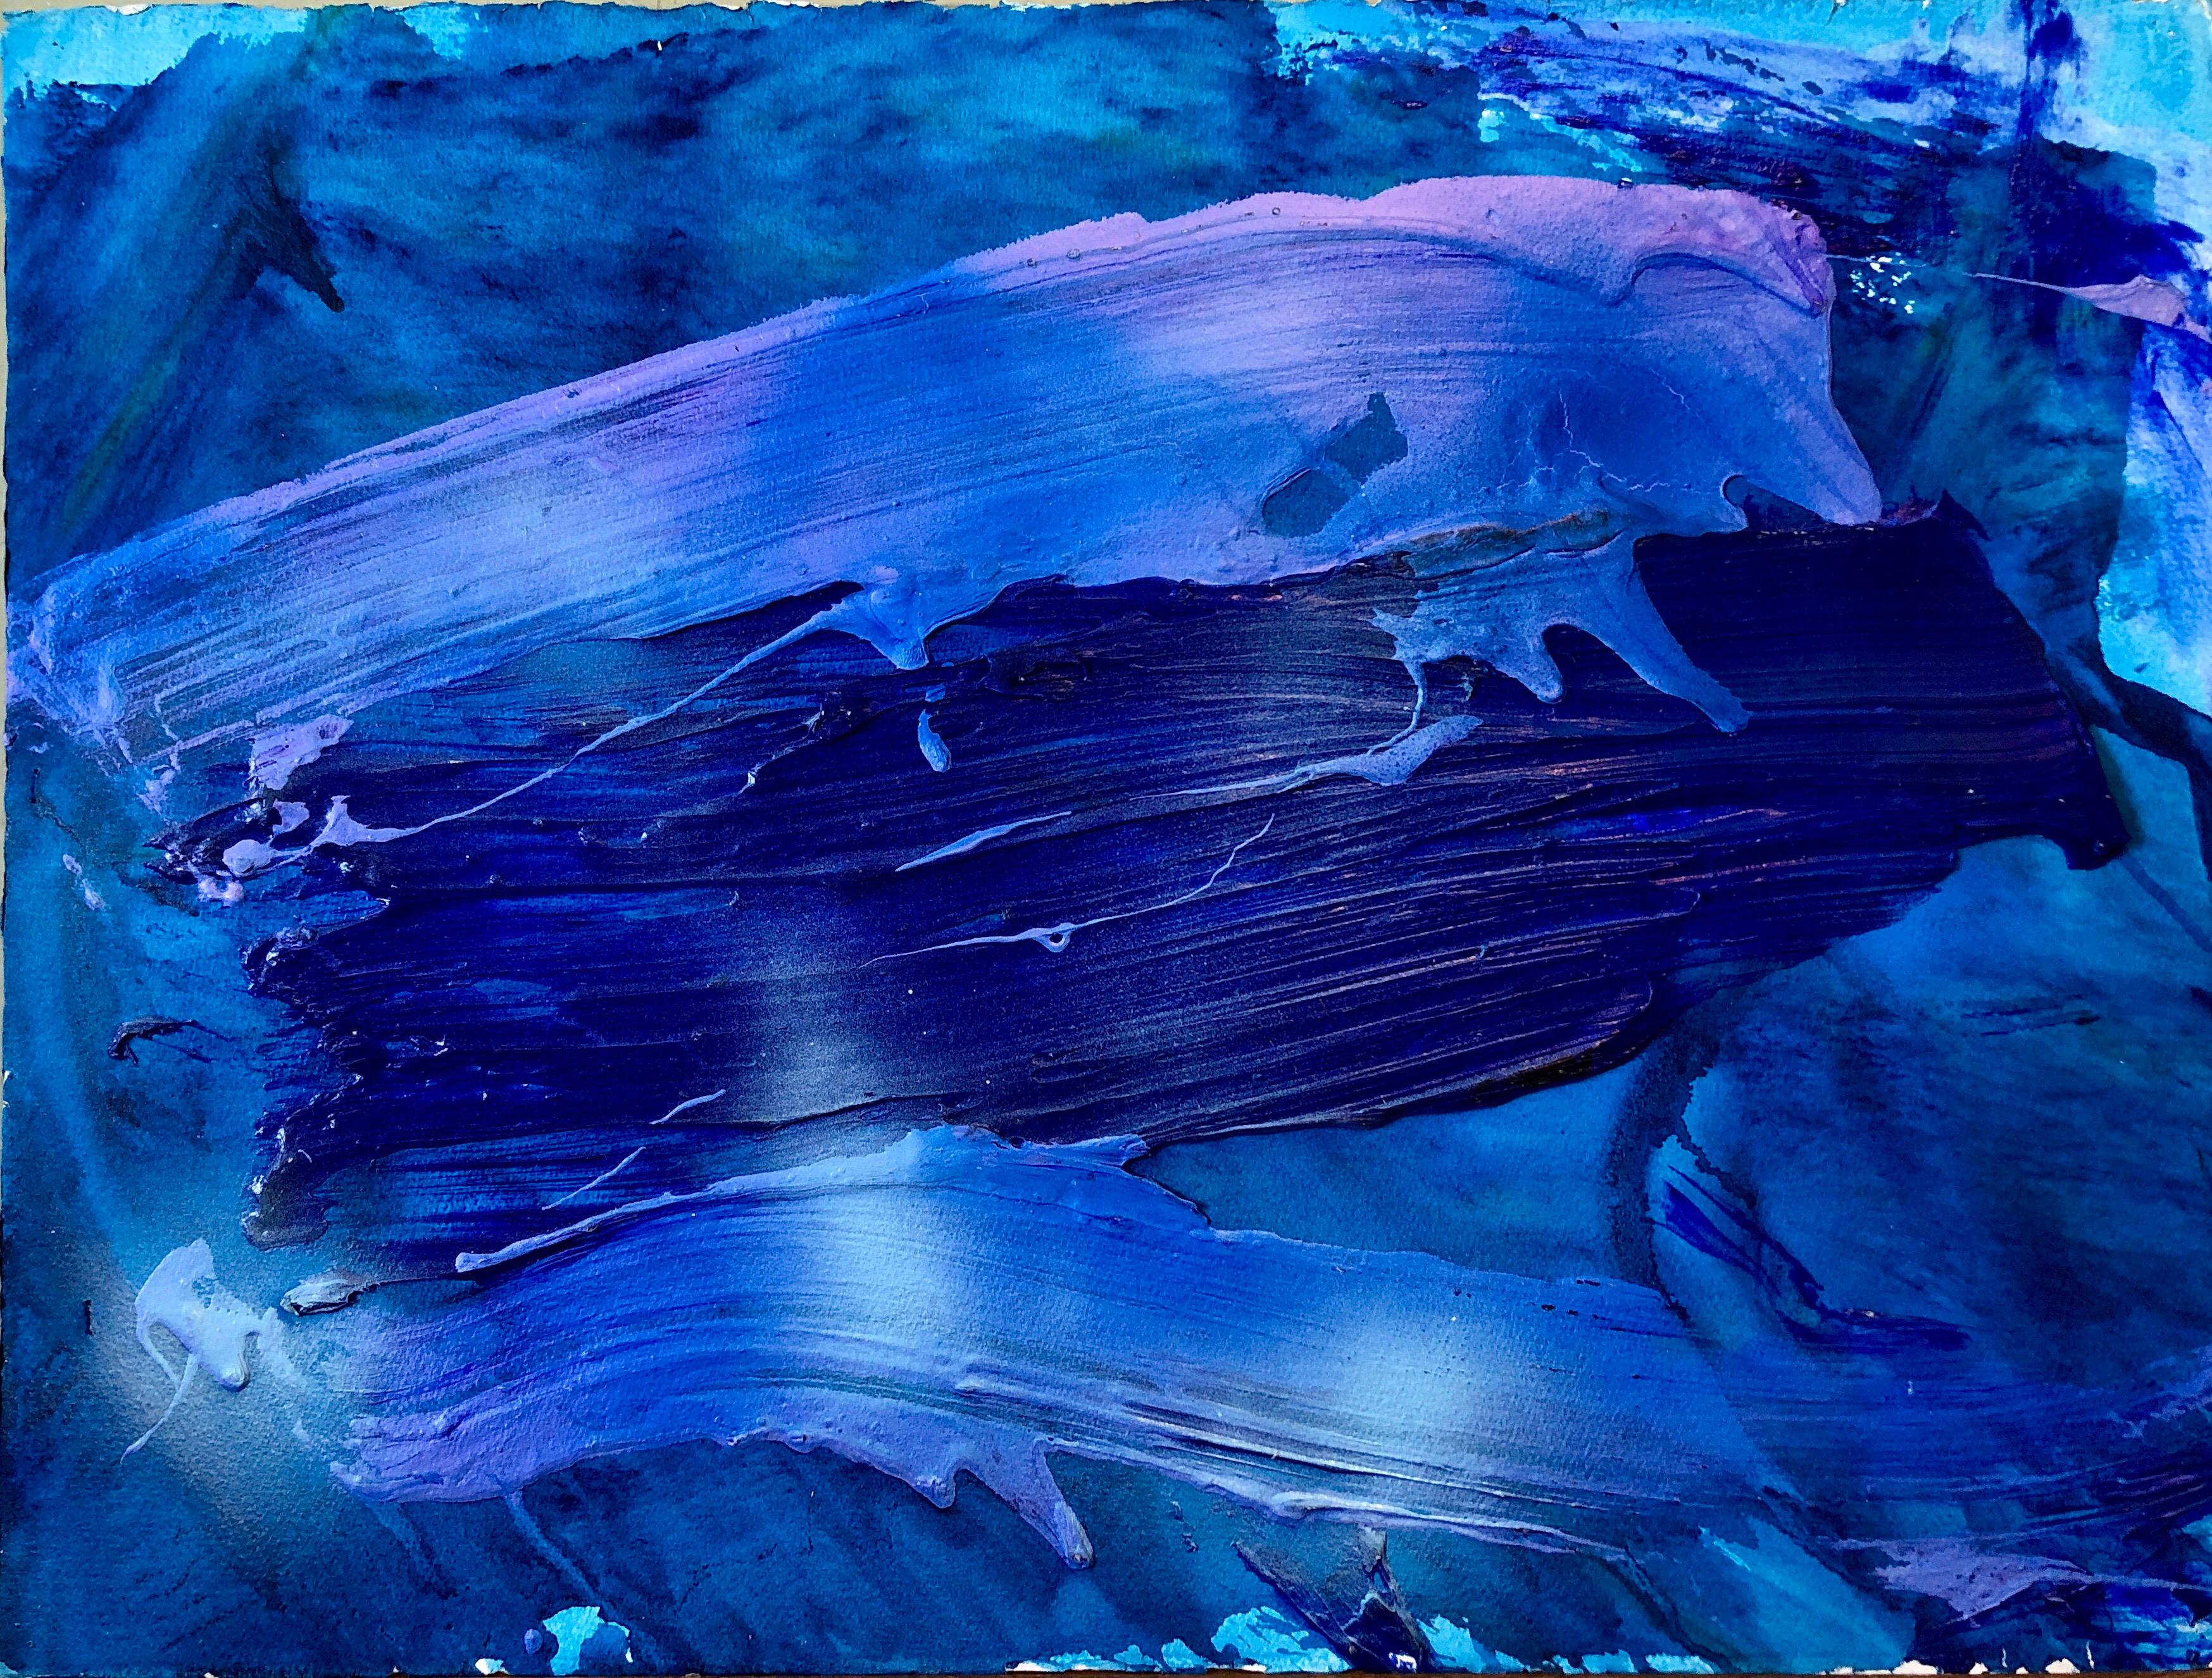 Boat Moon, in leuchtenden Blautönen auf Arches-Papier. nicht gerahmt.  Verso signiert, betitelt und datiert.

Francine Tint ist eine in New York lebende amerikanische Malerin des abstrakten Expressionismus und Kostümdesignerin.
Tint studierte am